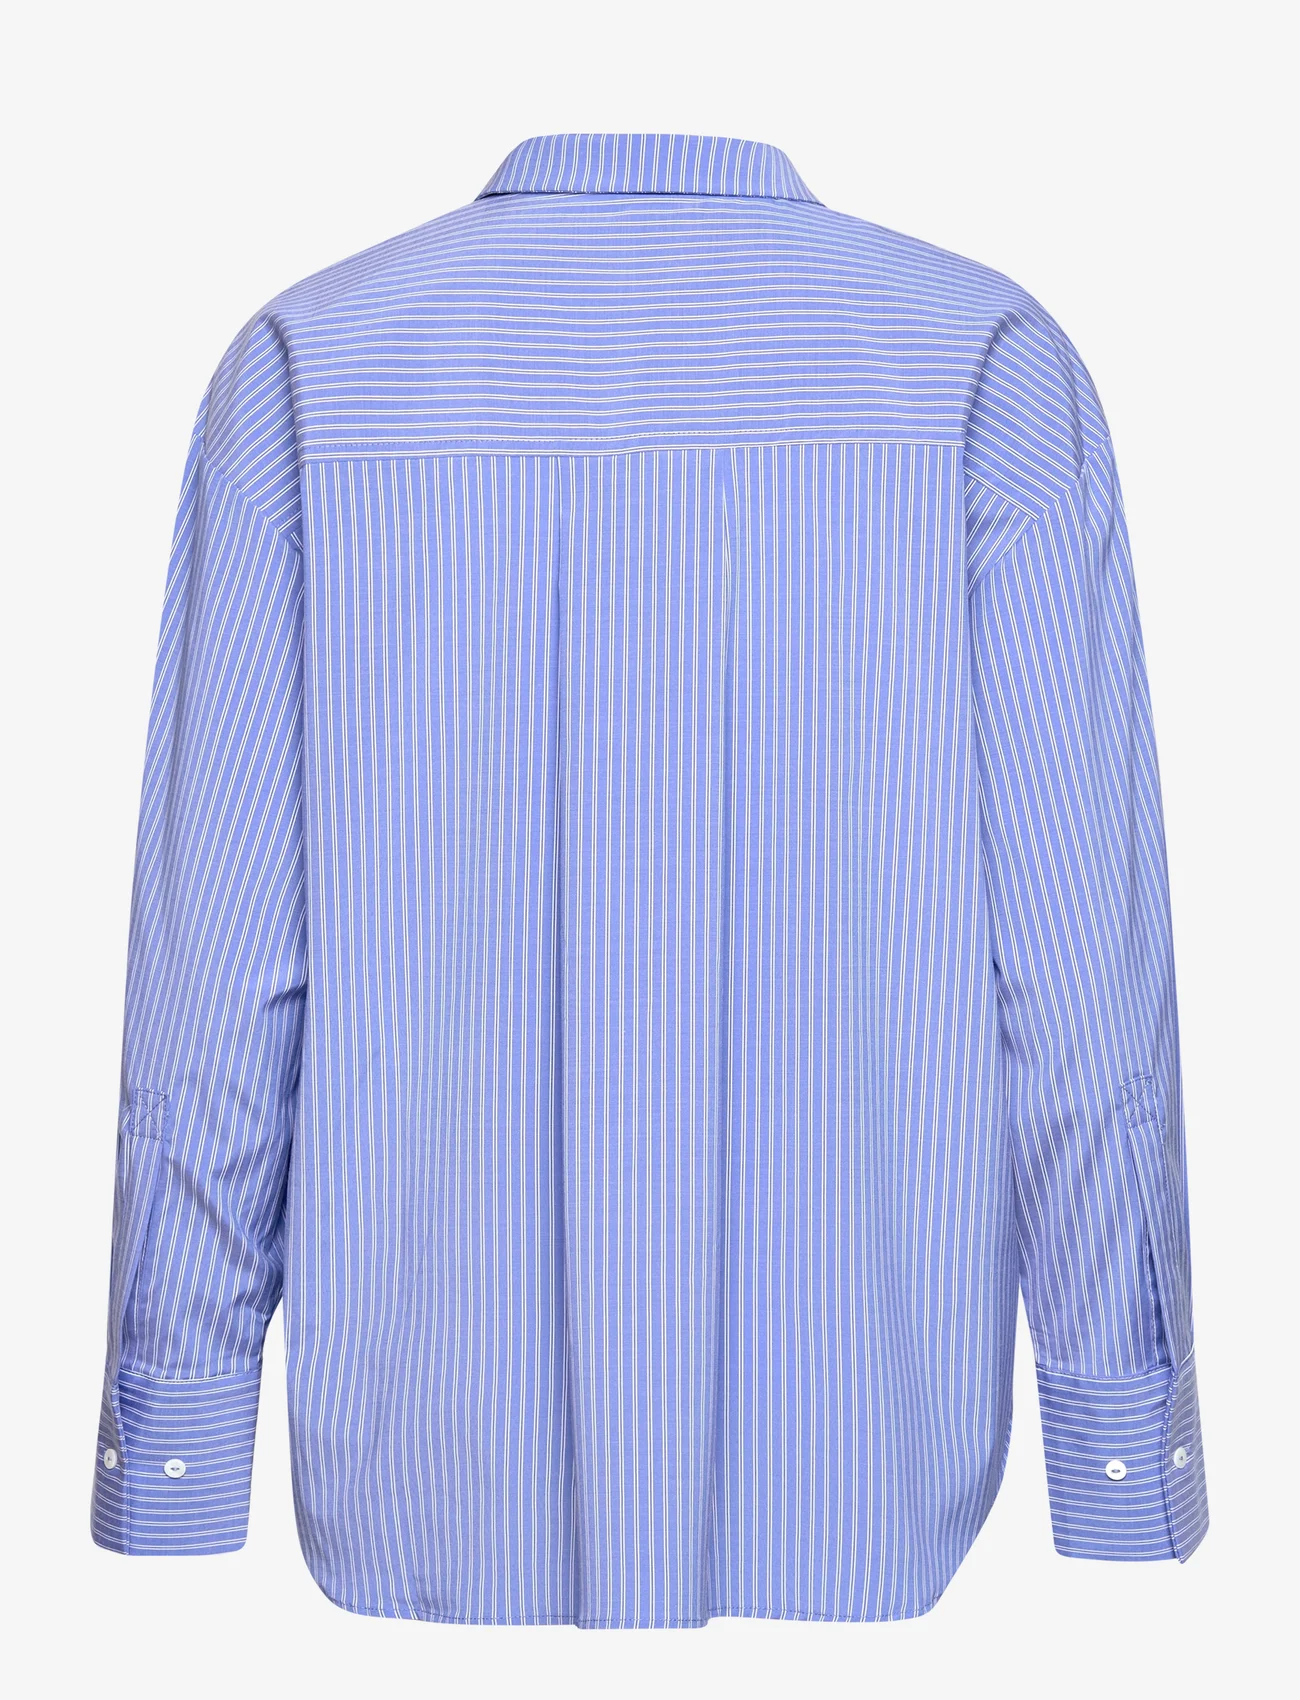 Sofie Schnoor - Shirt - langärmlige hemden - blue striped - 1